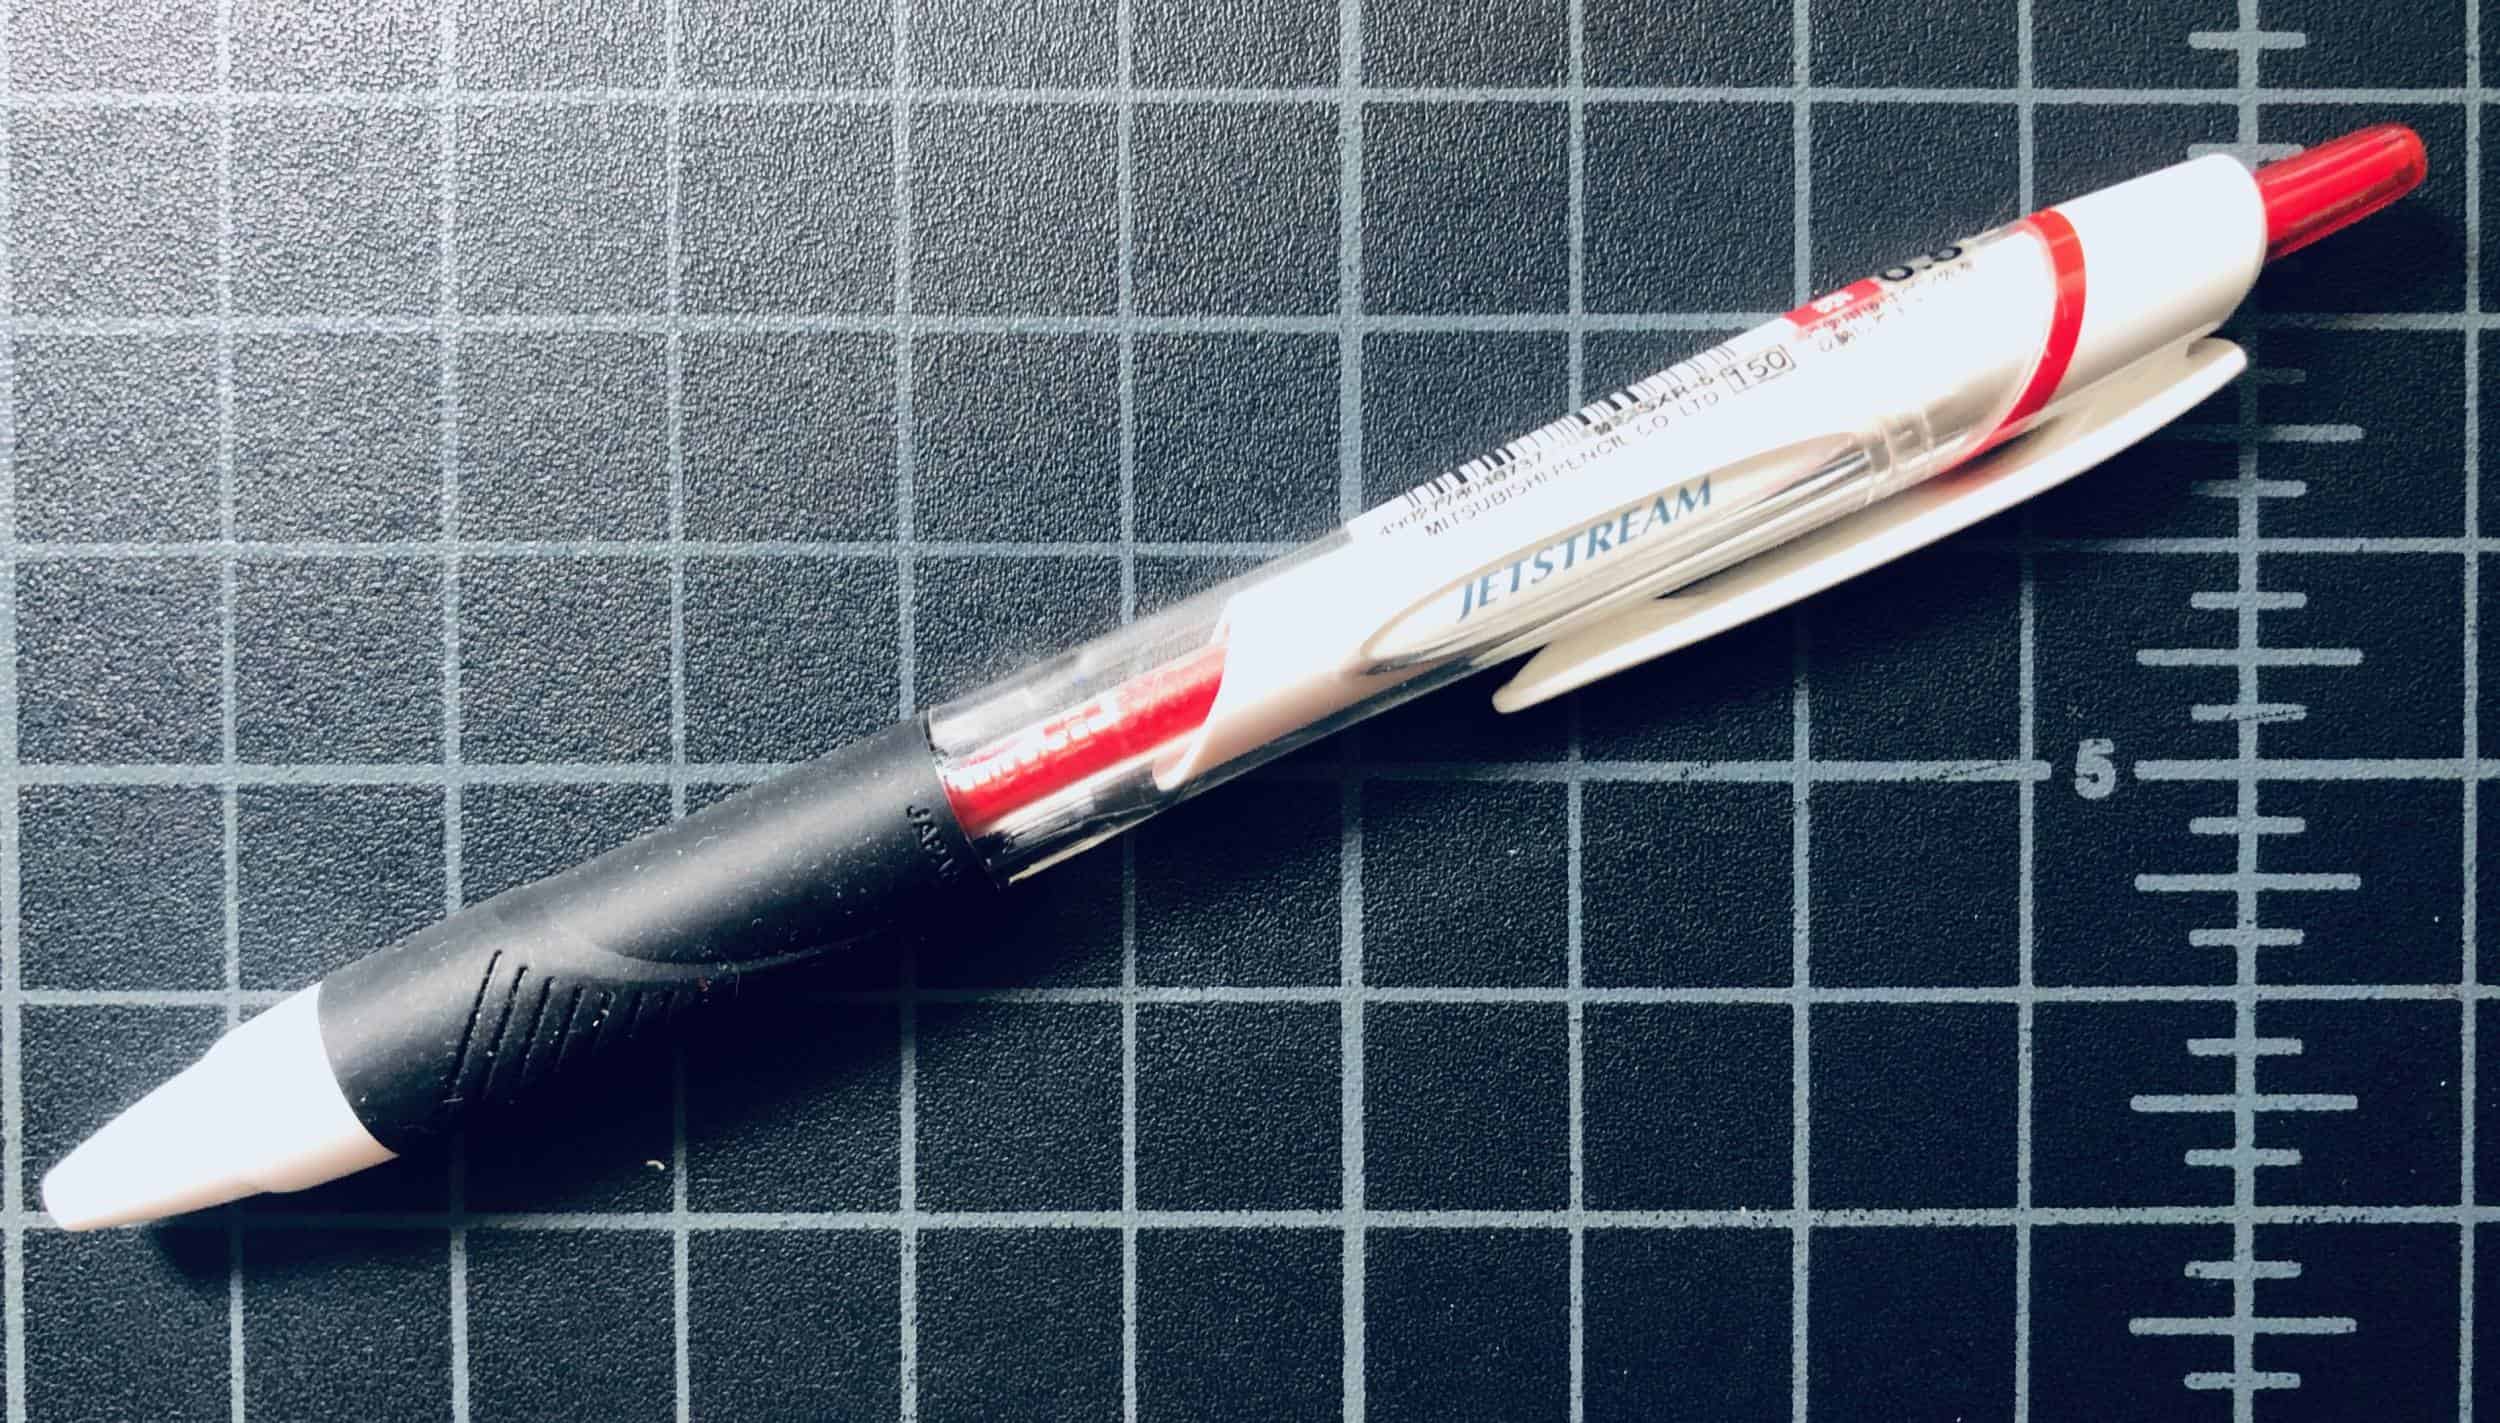 Uni Jetstream Ballpoint Pen